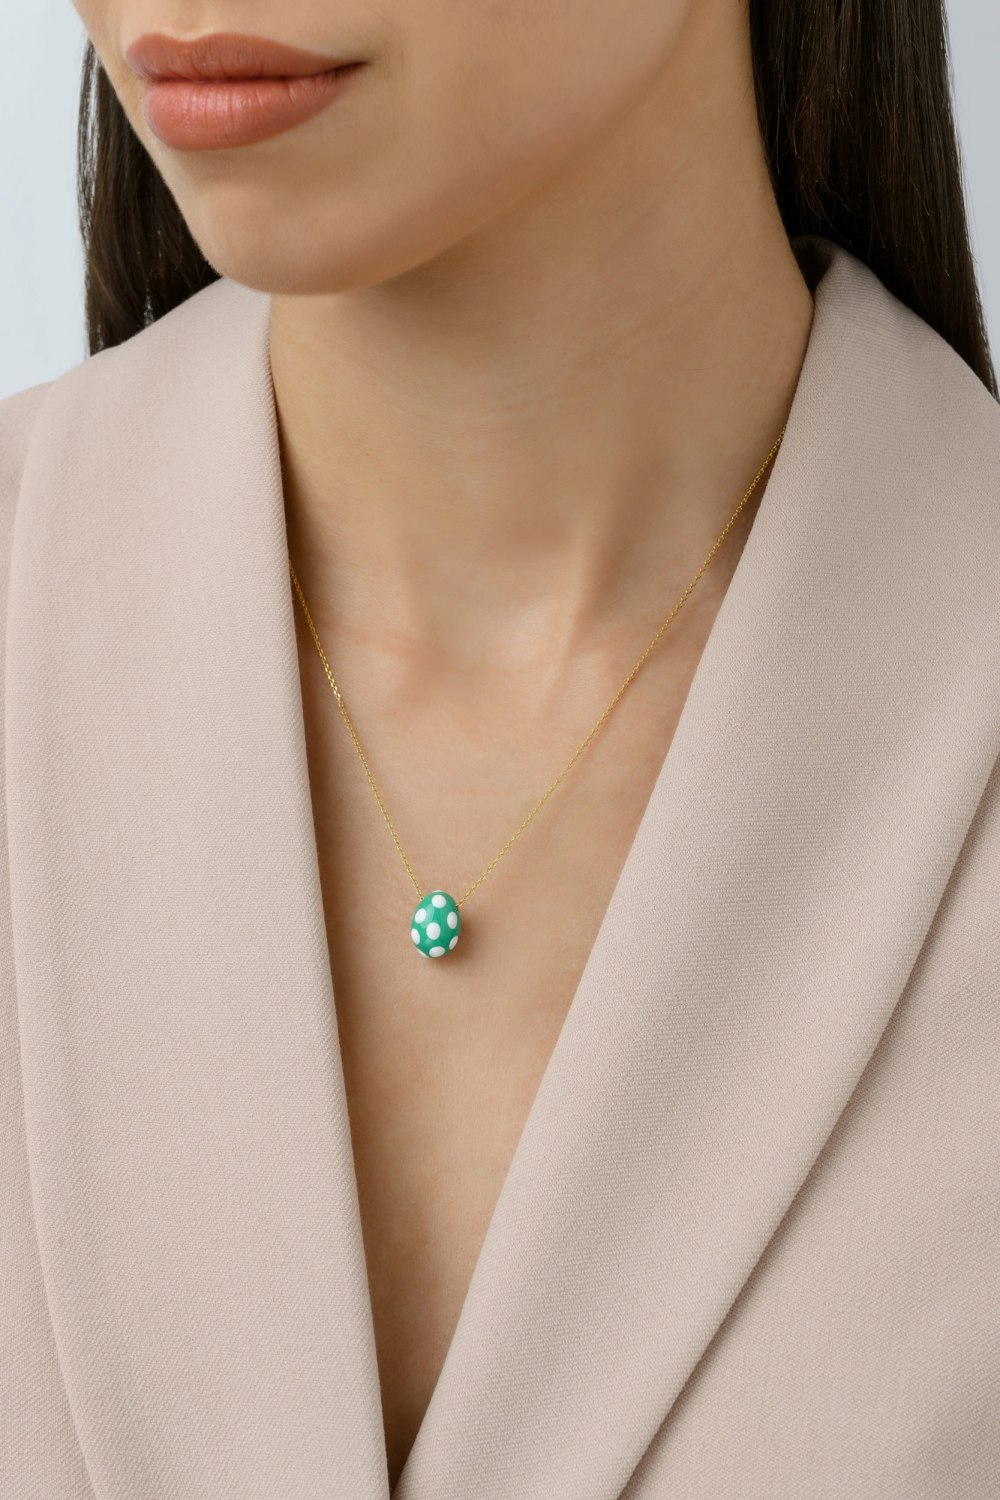 KESSARIS - Green Polka-Dot Easter Egg Pendant Necklace